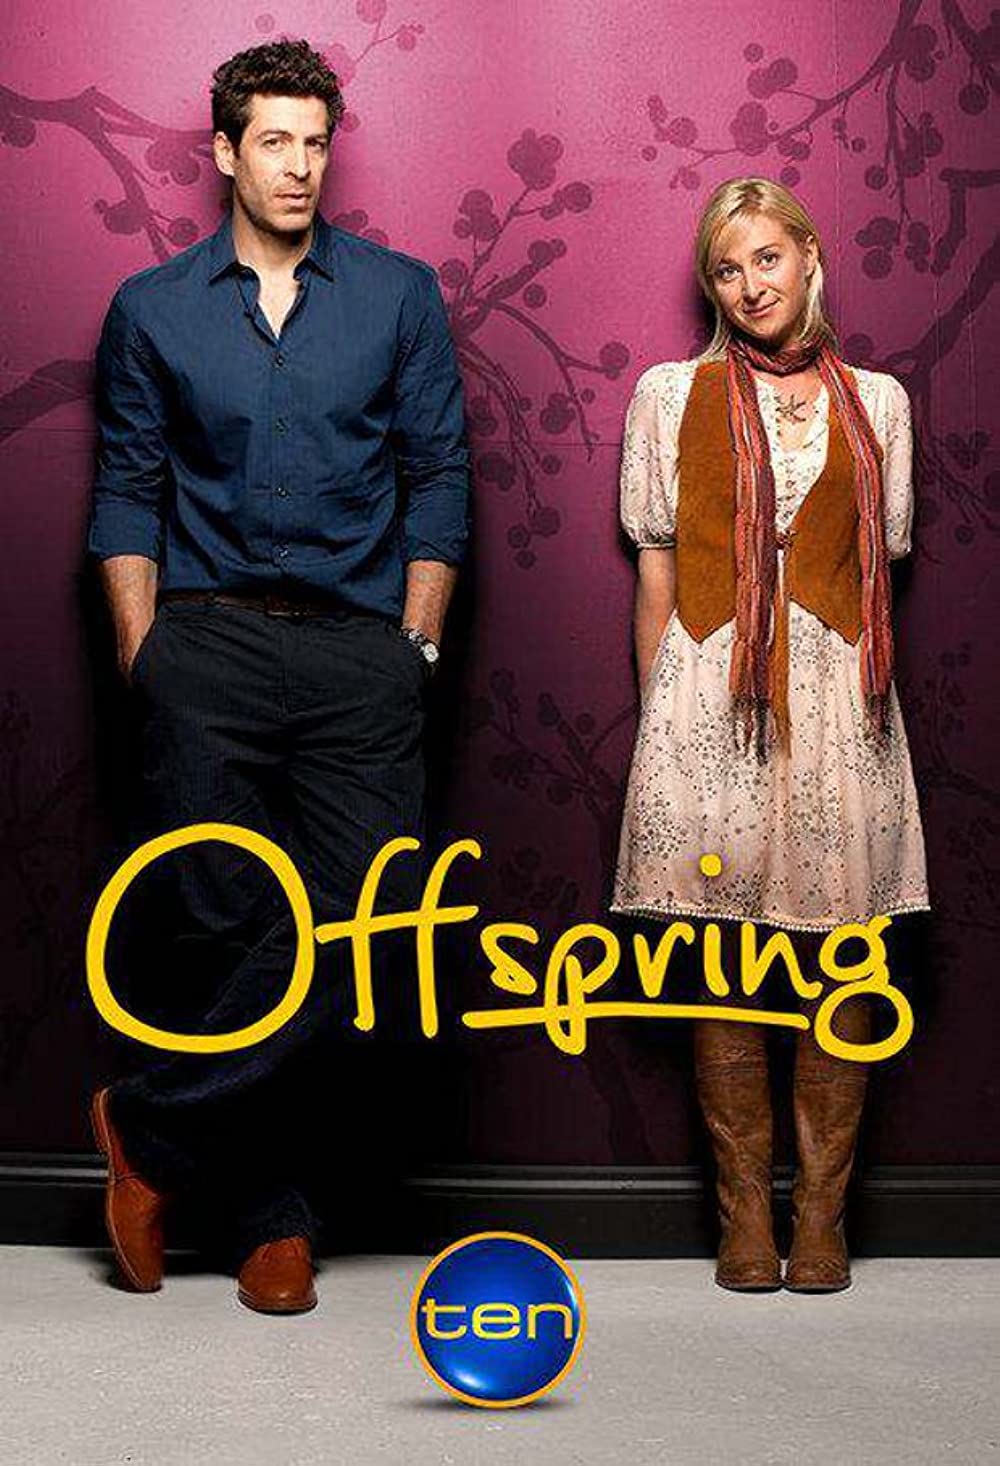 Filmbeschreibung zu Offspring (OV)